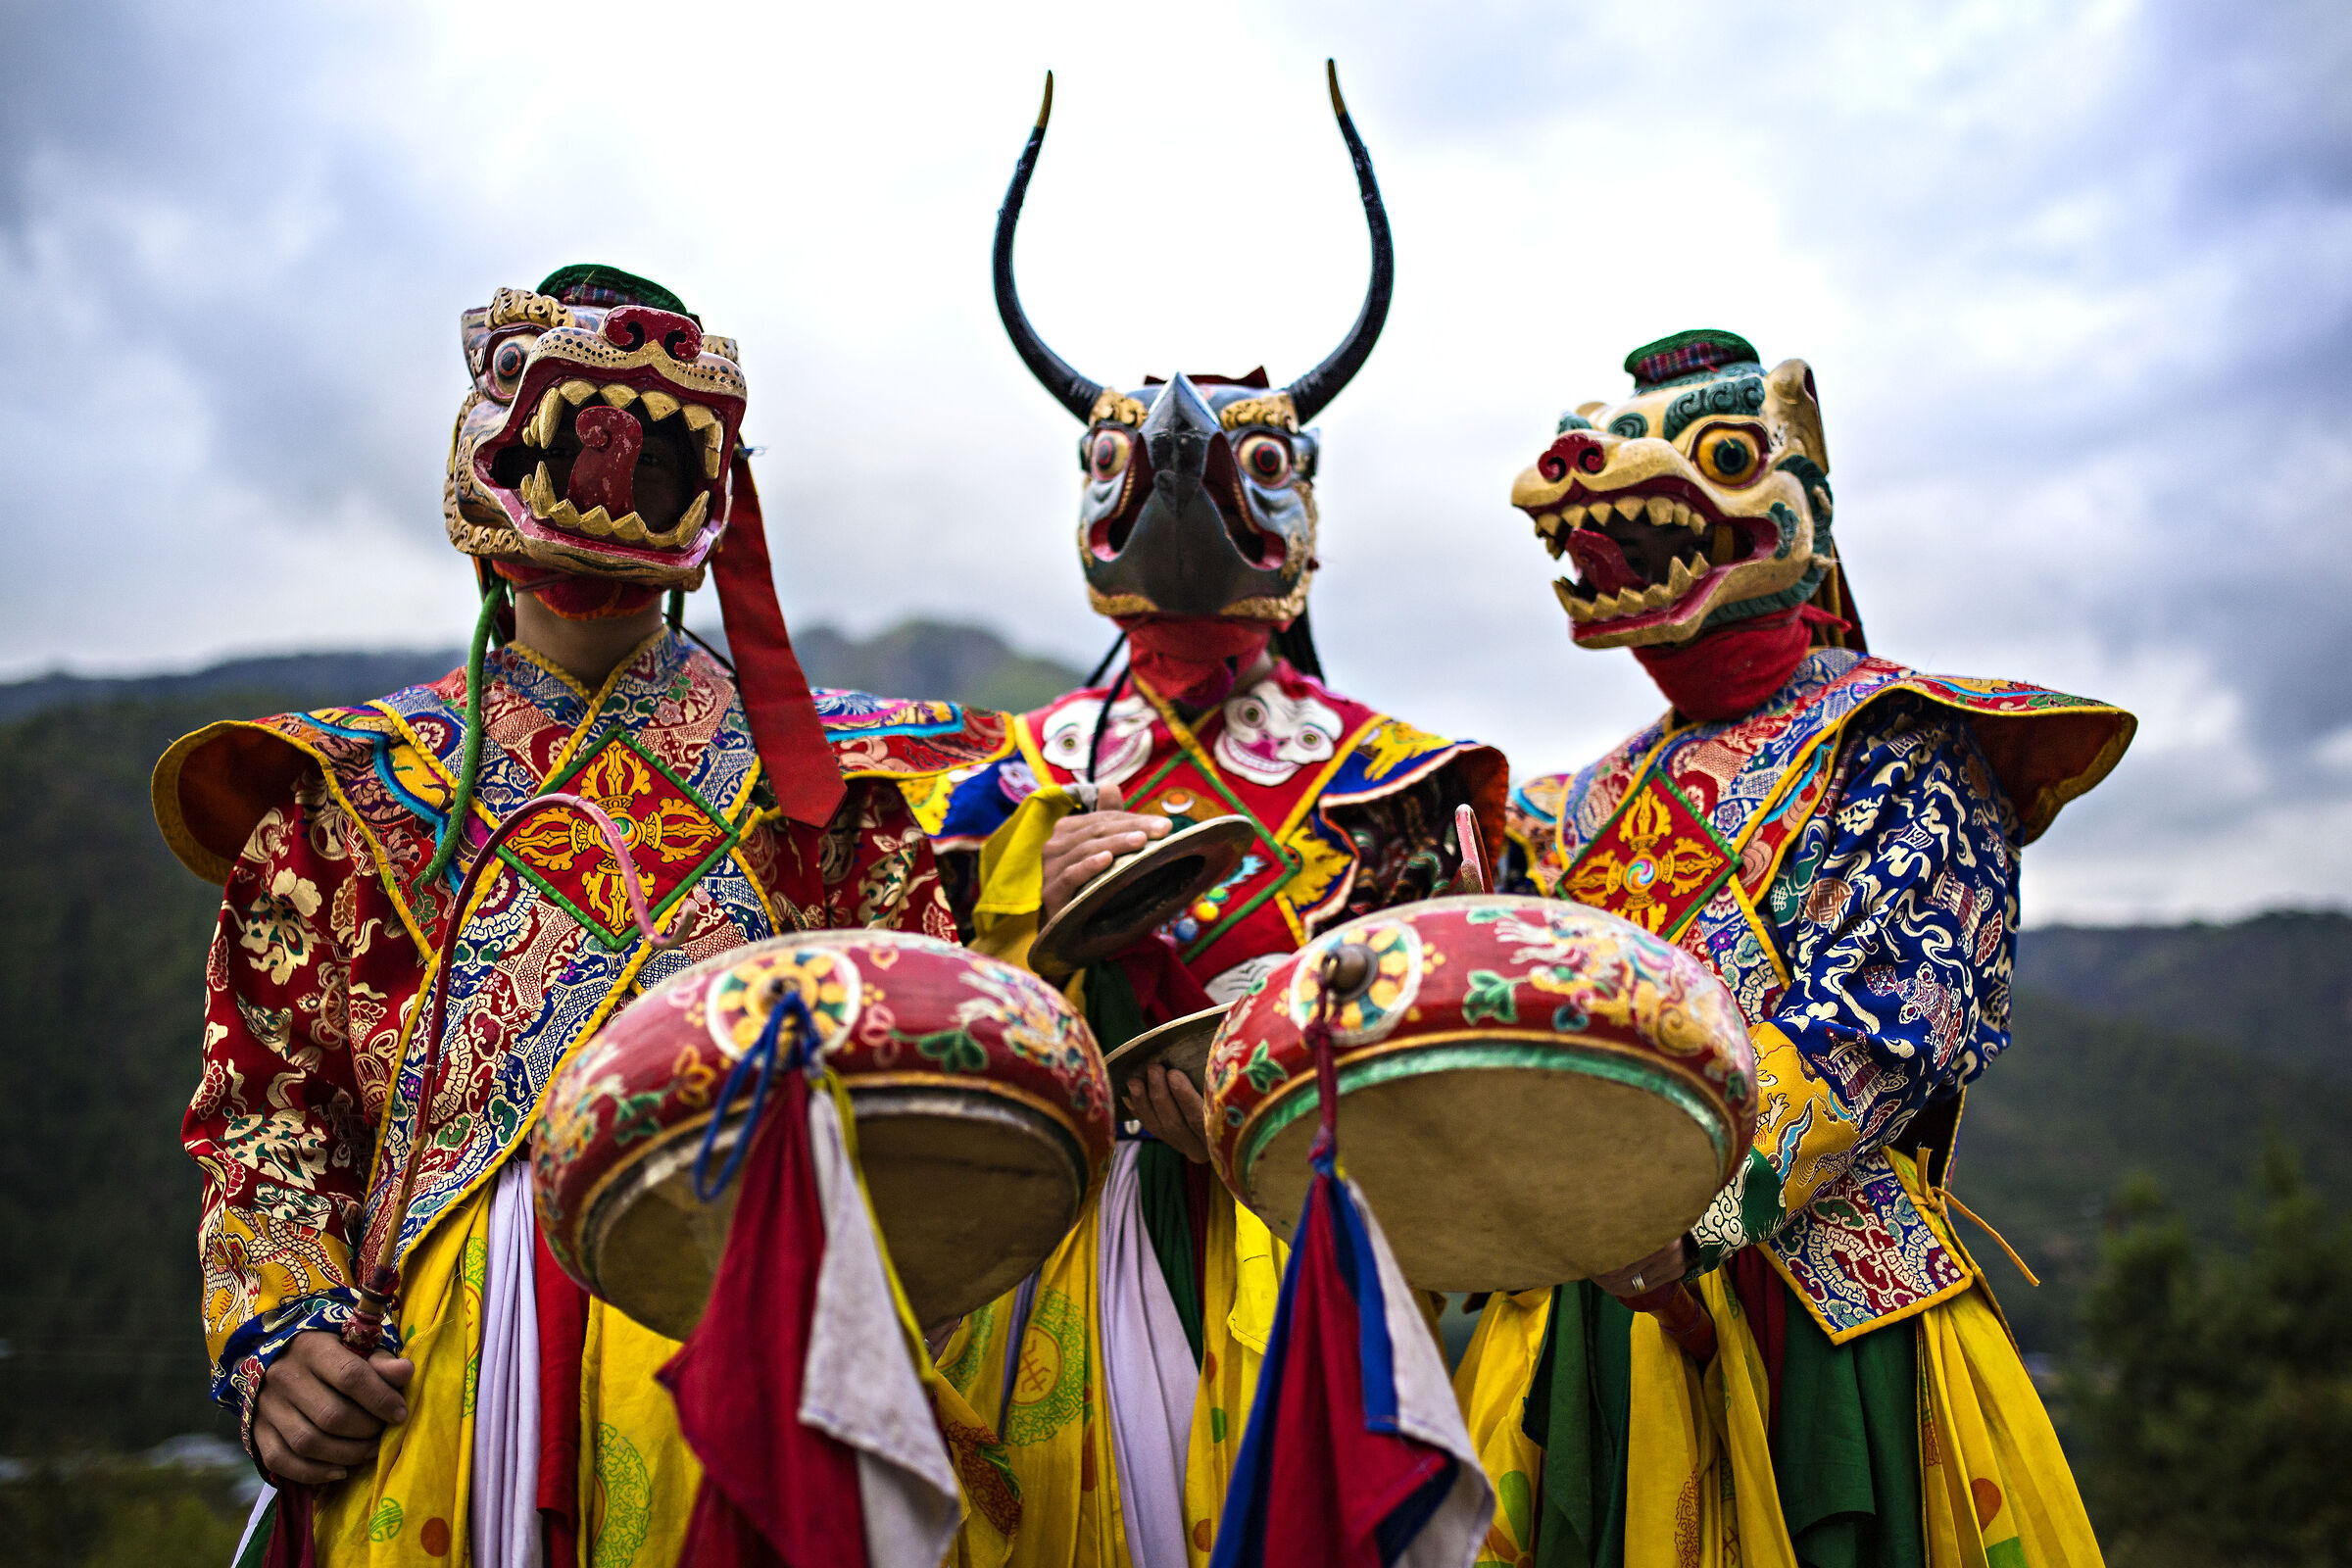 Tsechu Bhutan festival...